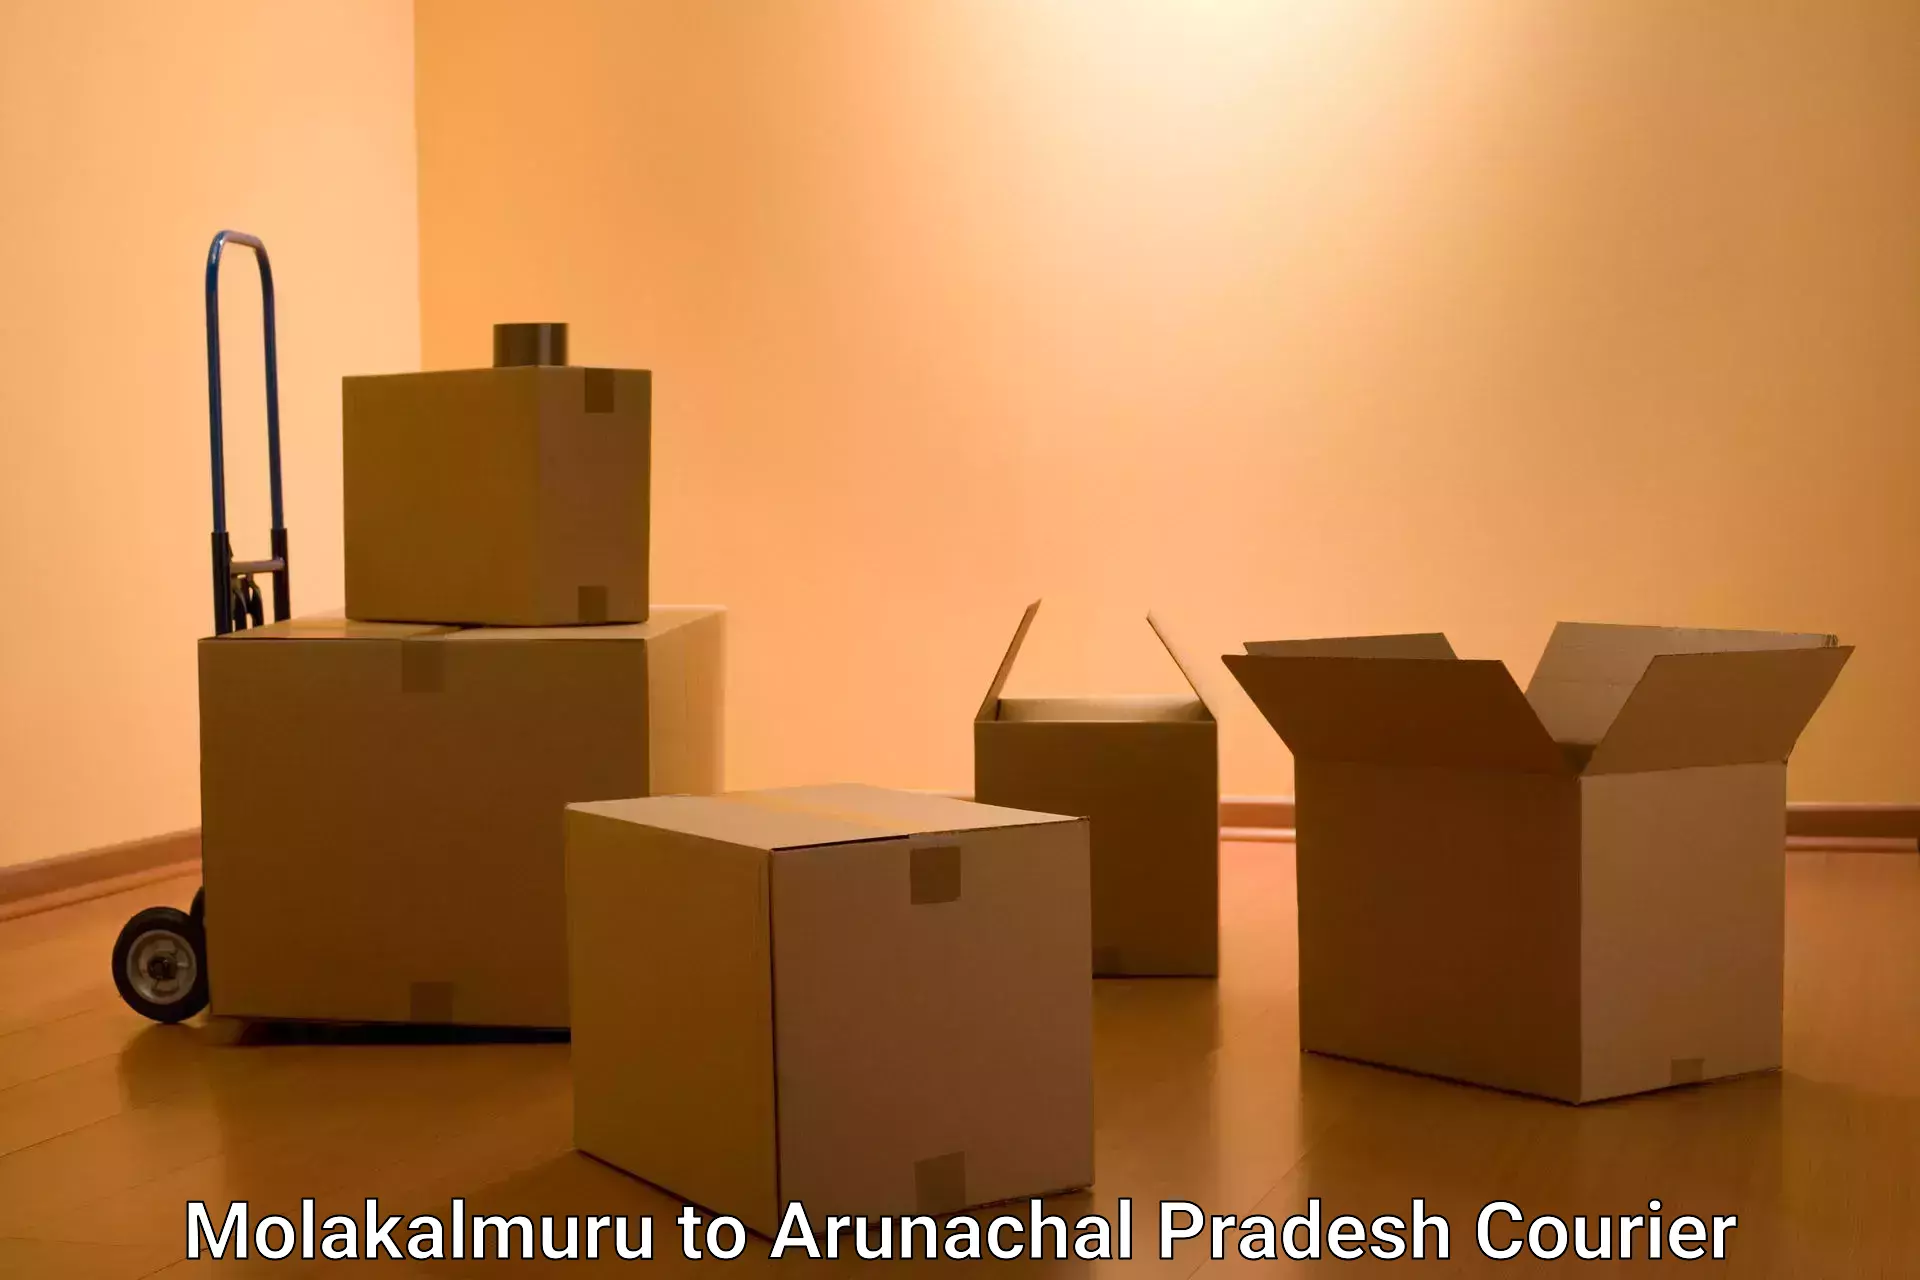 Nationwide parcel services Molakalmuru to Arunachal Pradesh